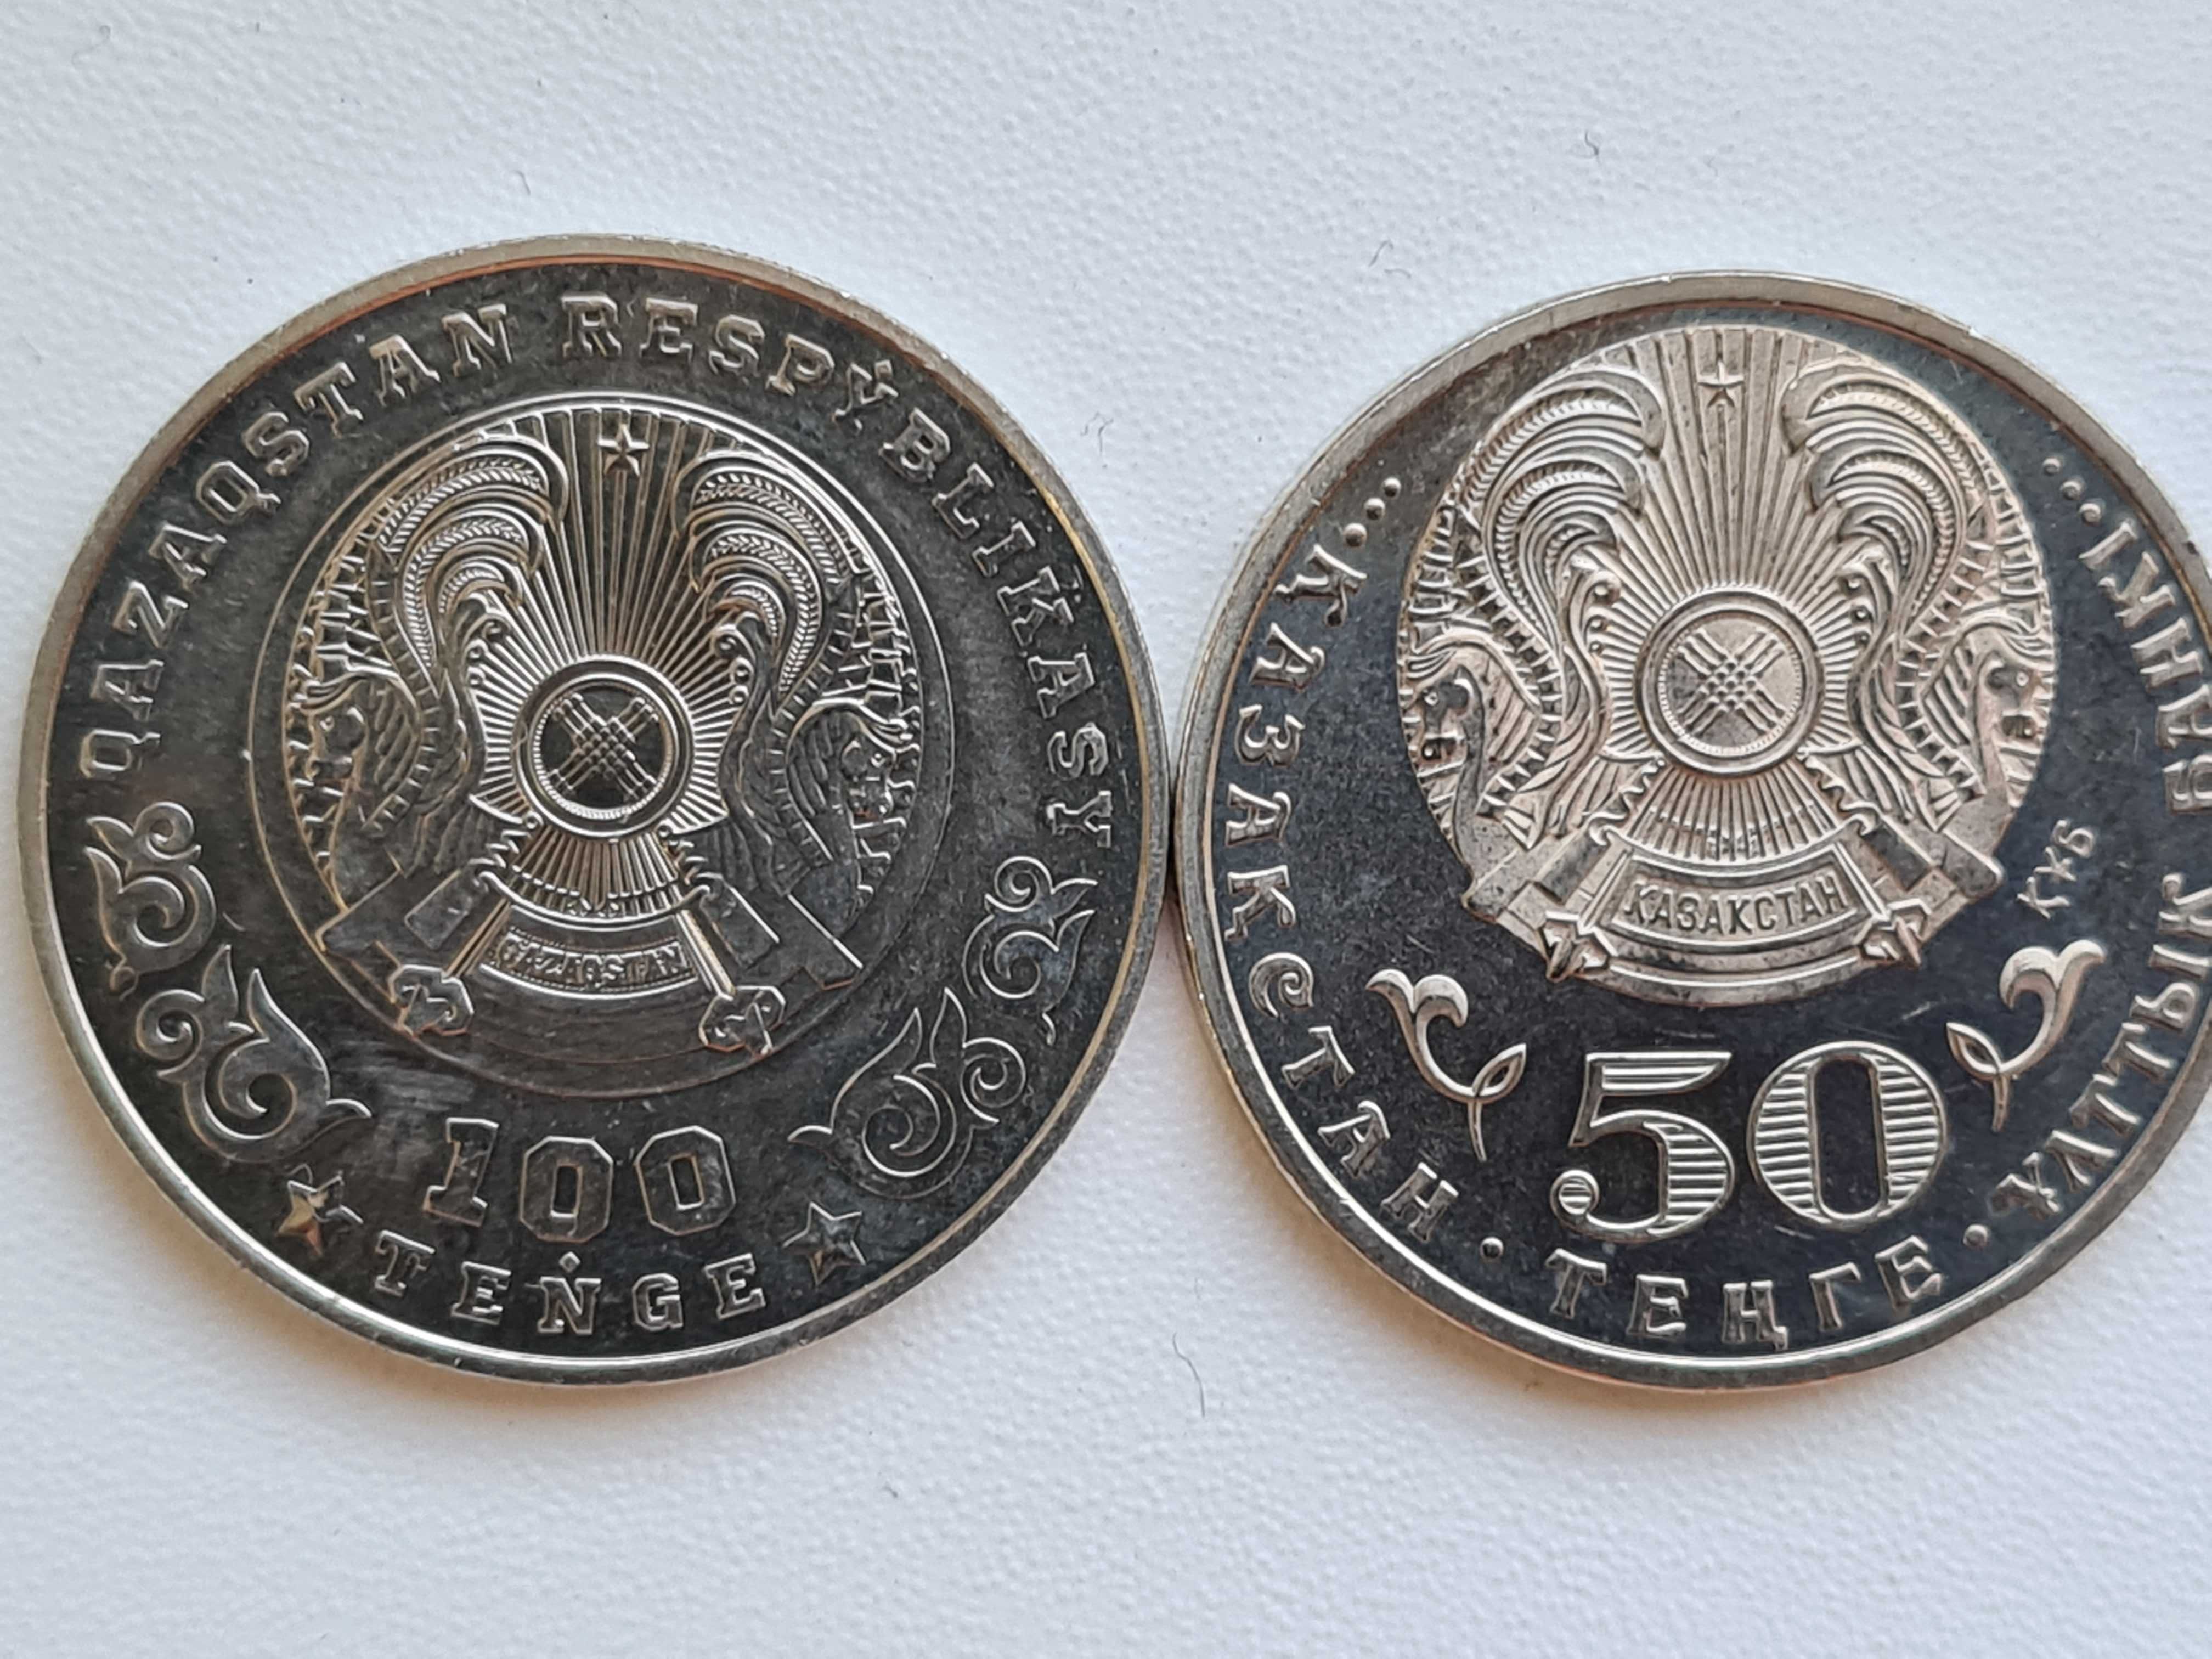 50 тенге, Ёжик  и другие монеты.